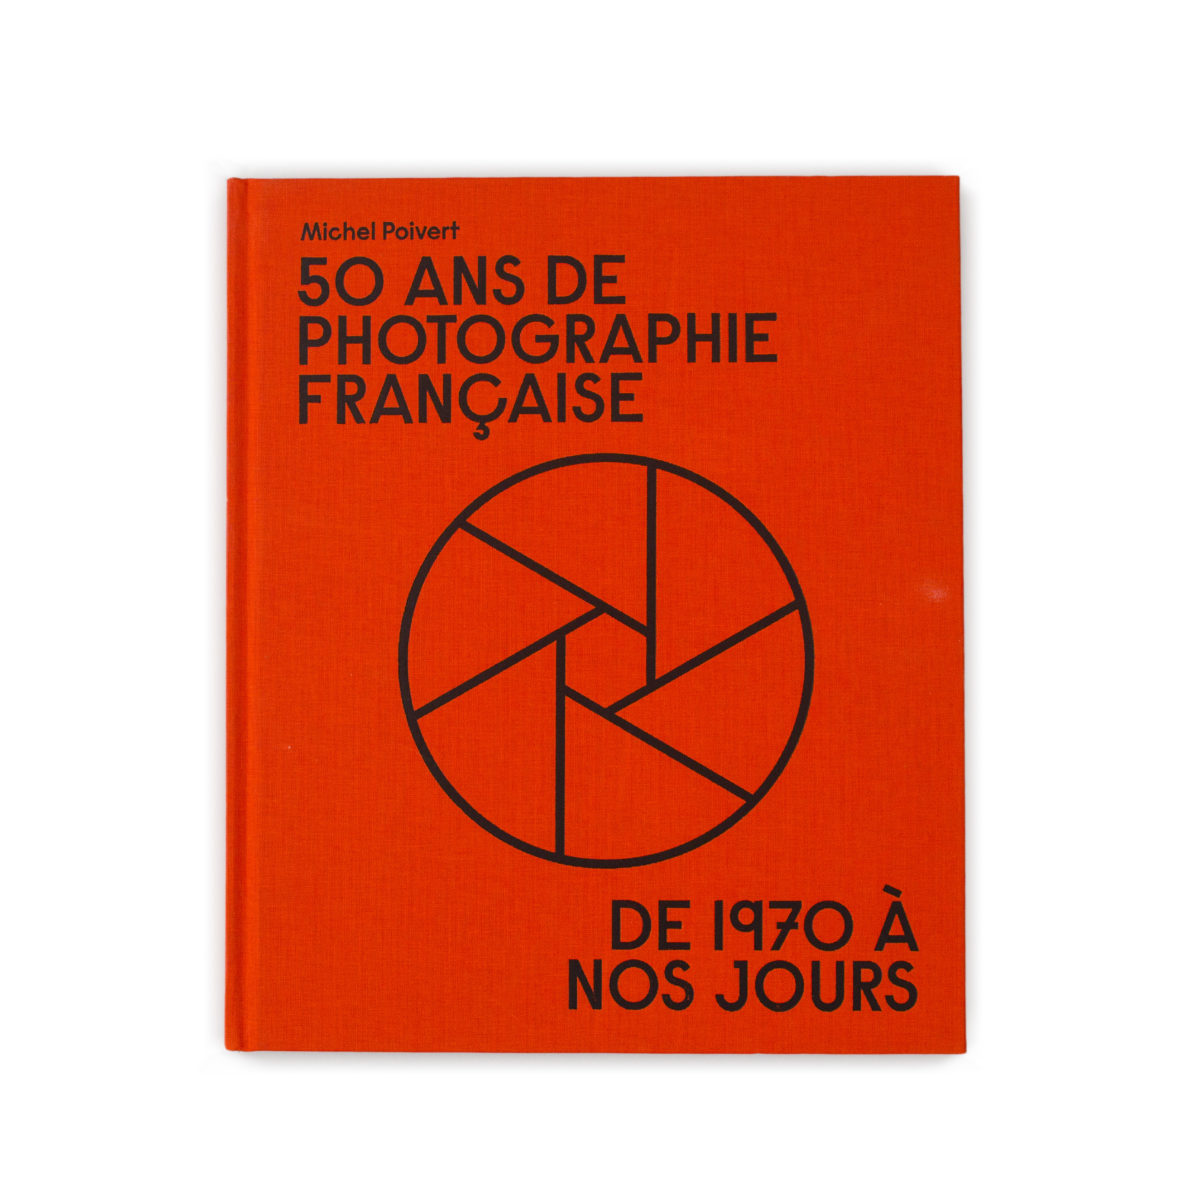 50 ans de photographie française, de 1970 à nos jours, Michel Poivert, Textuel